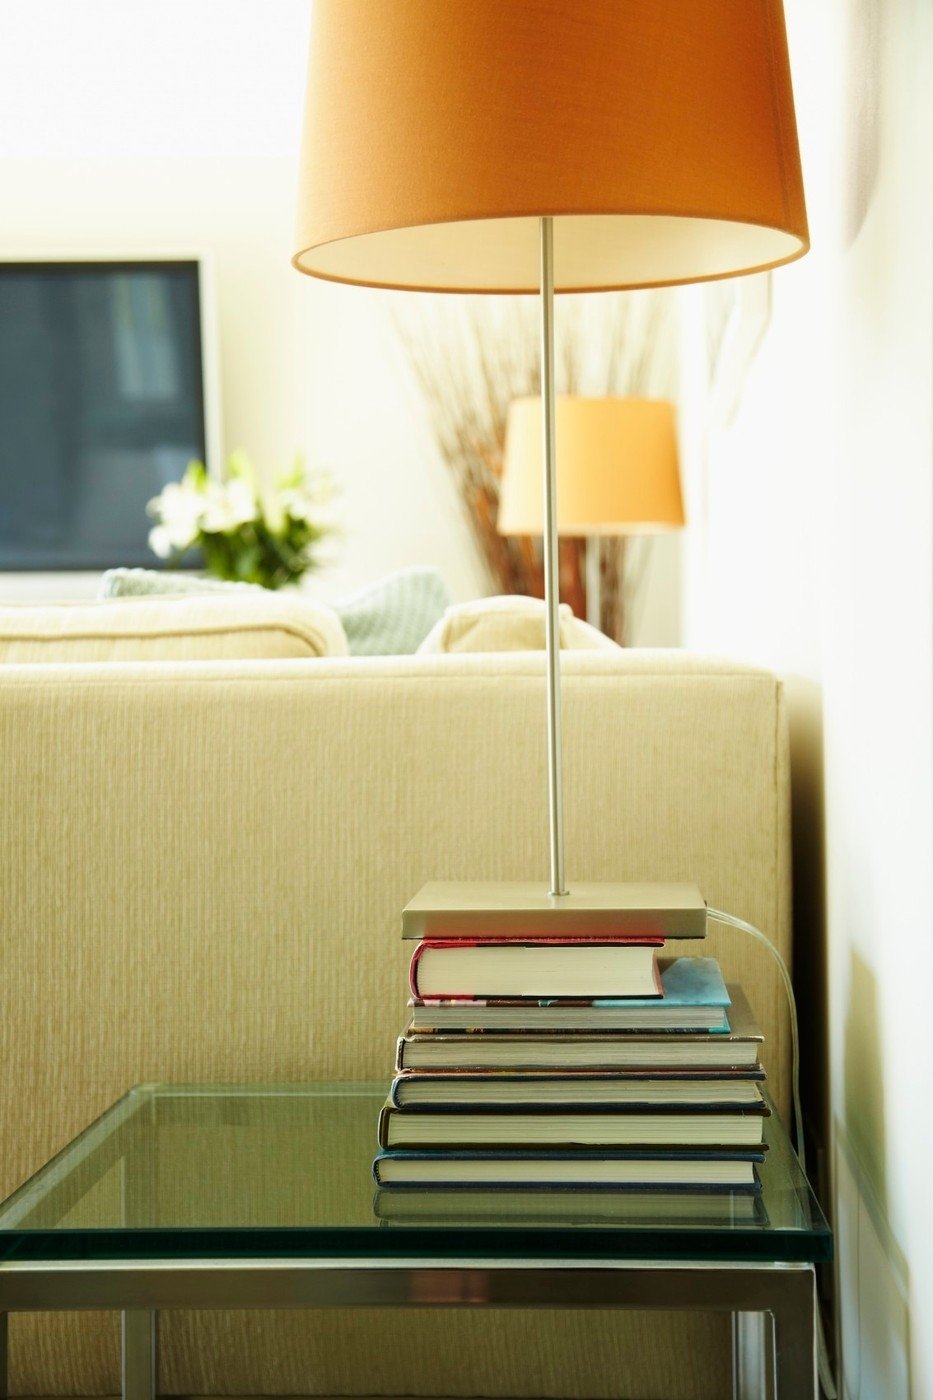 Lampy vytváří v bytě příjmnou atmosféru.